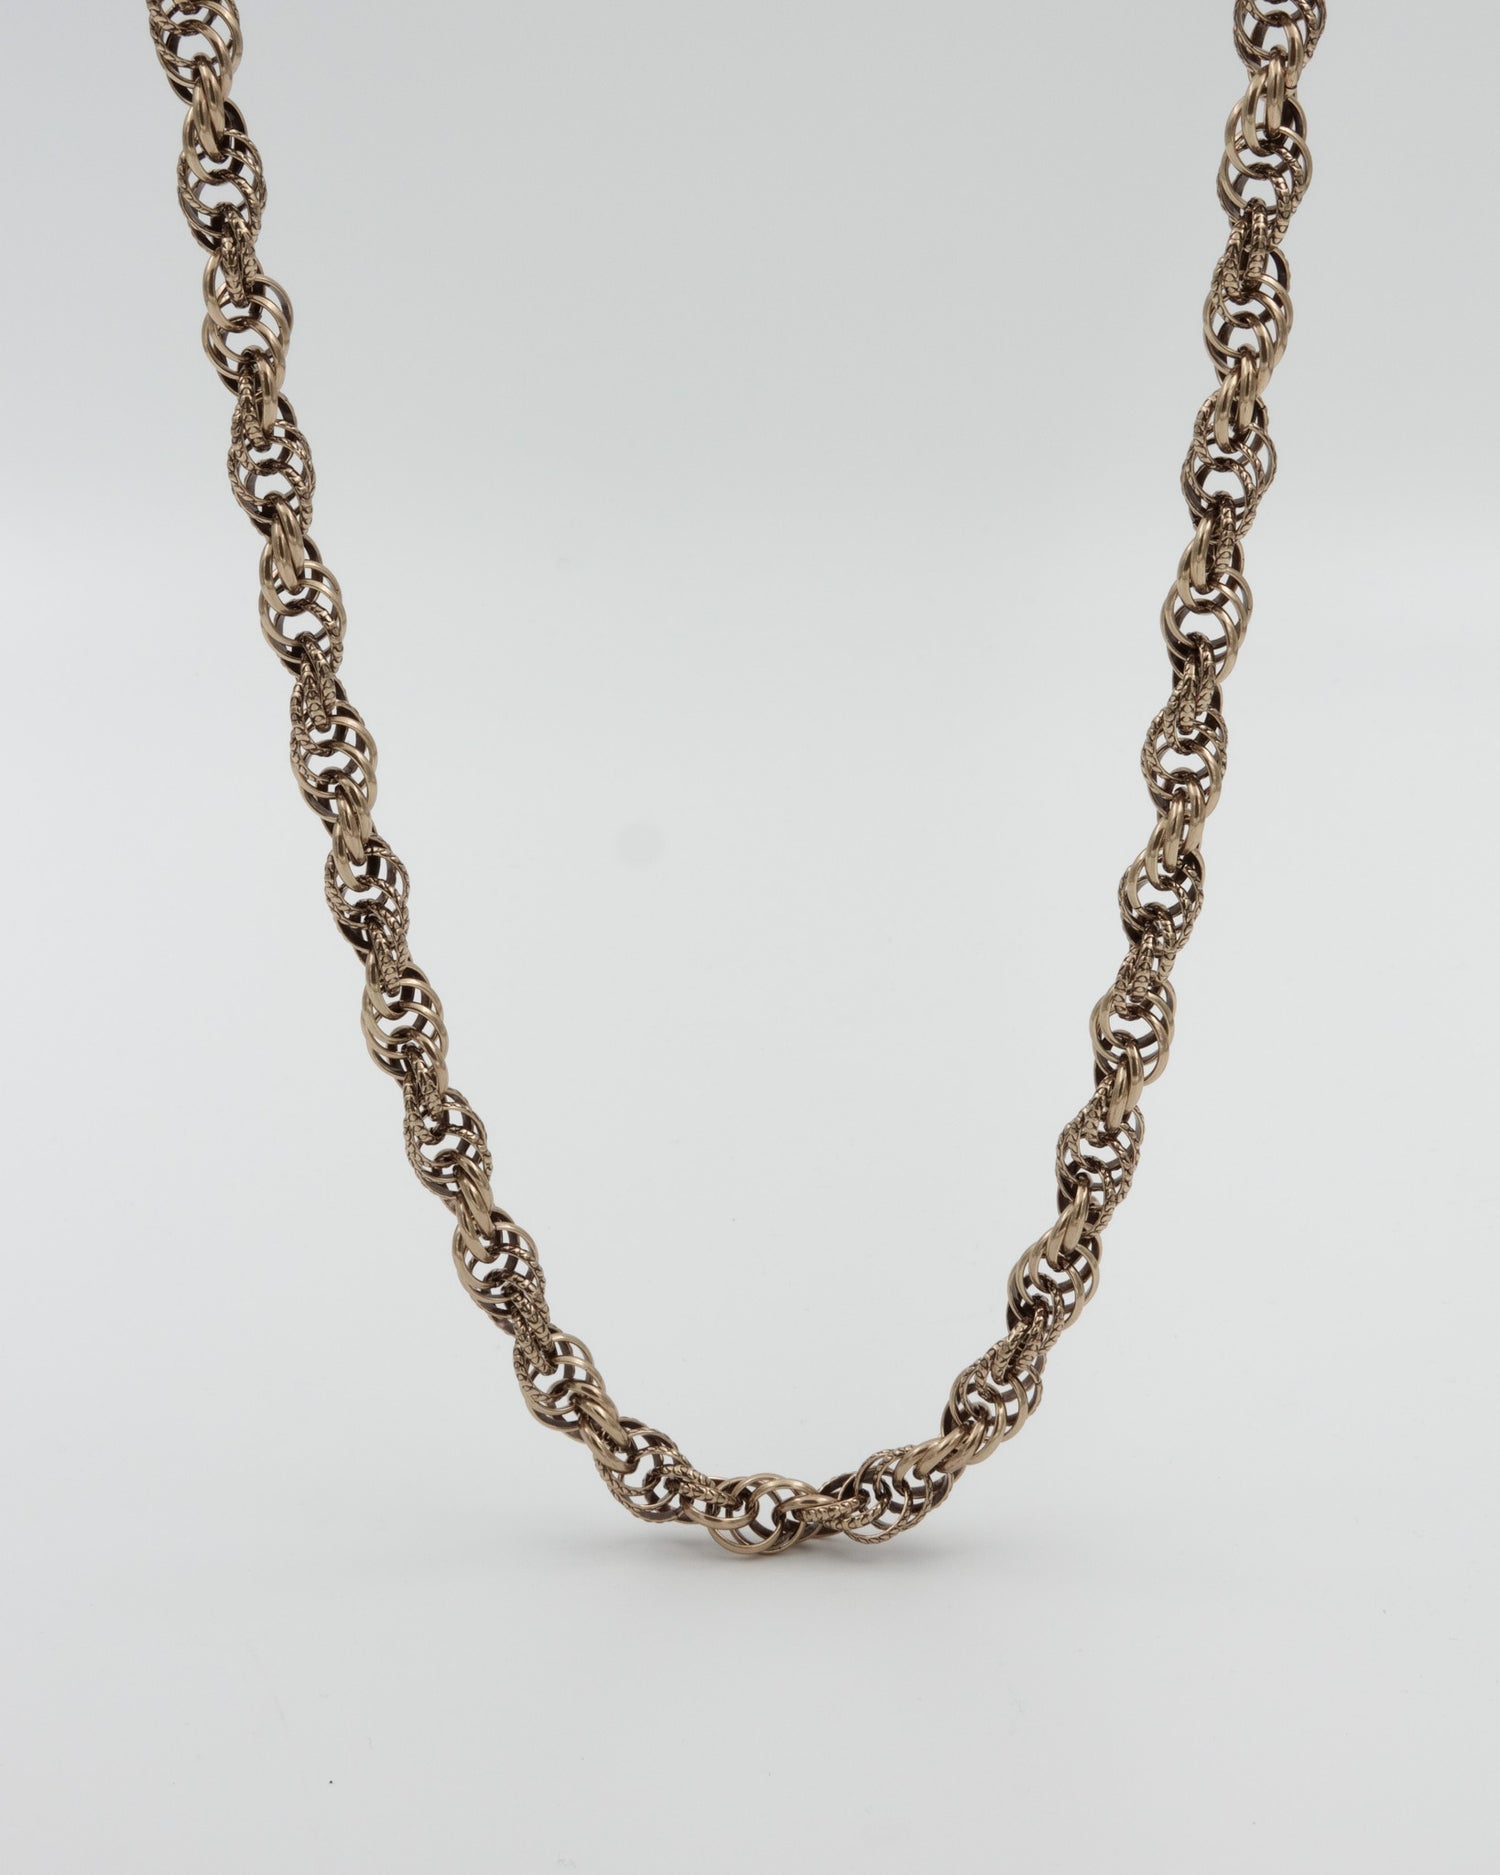 Kept Setukainen wrapped necklace 42 cm bronze